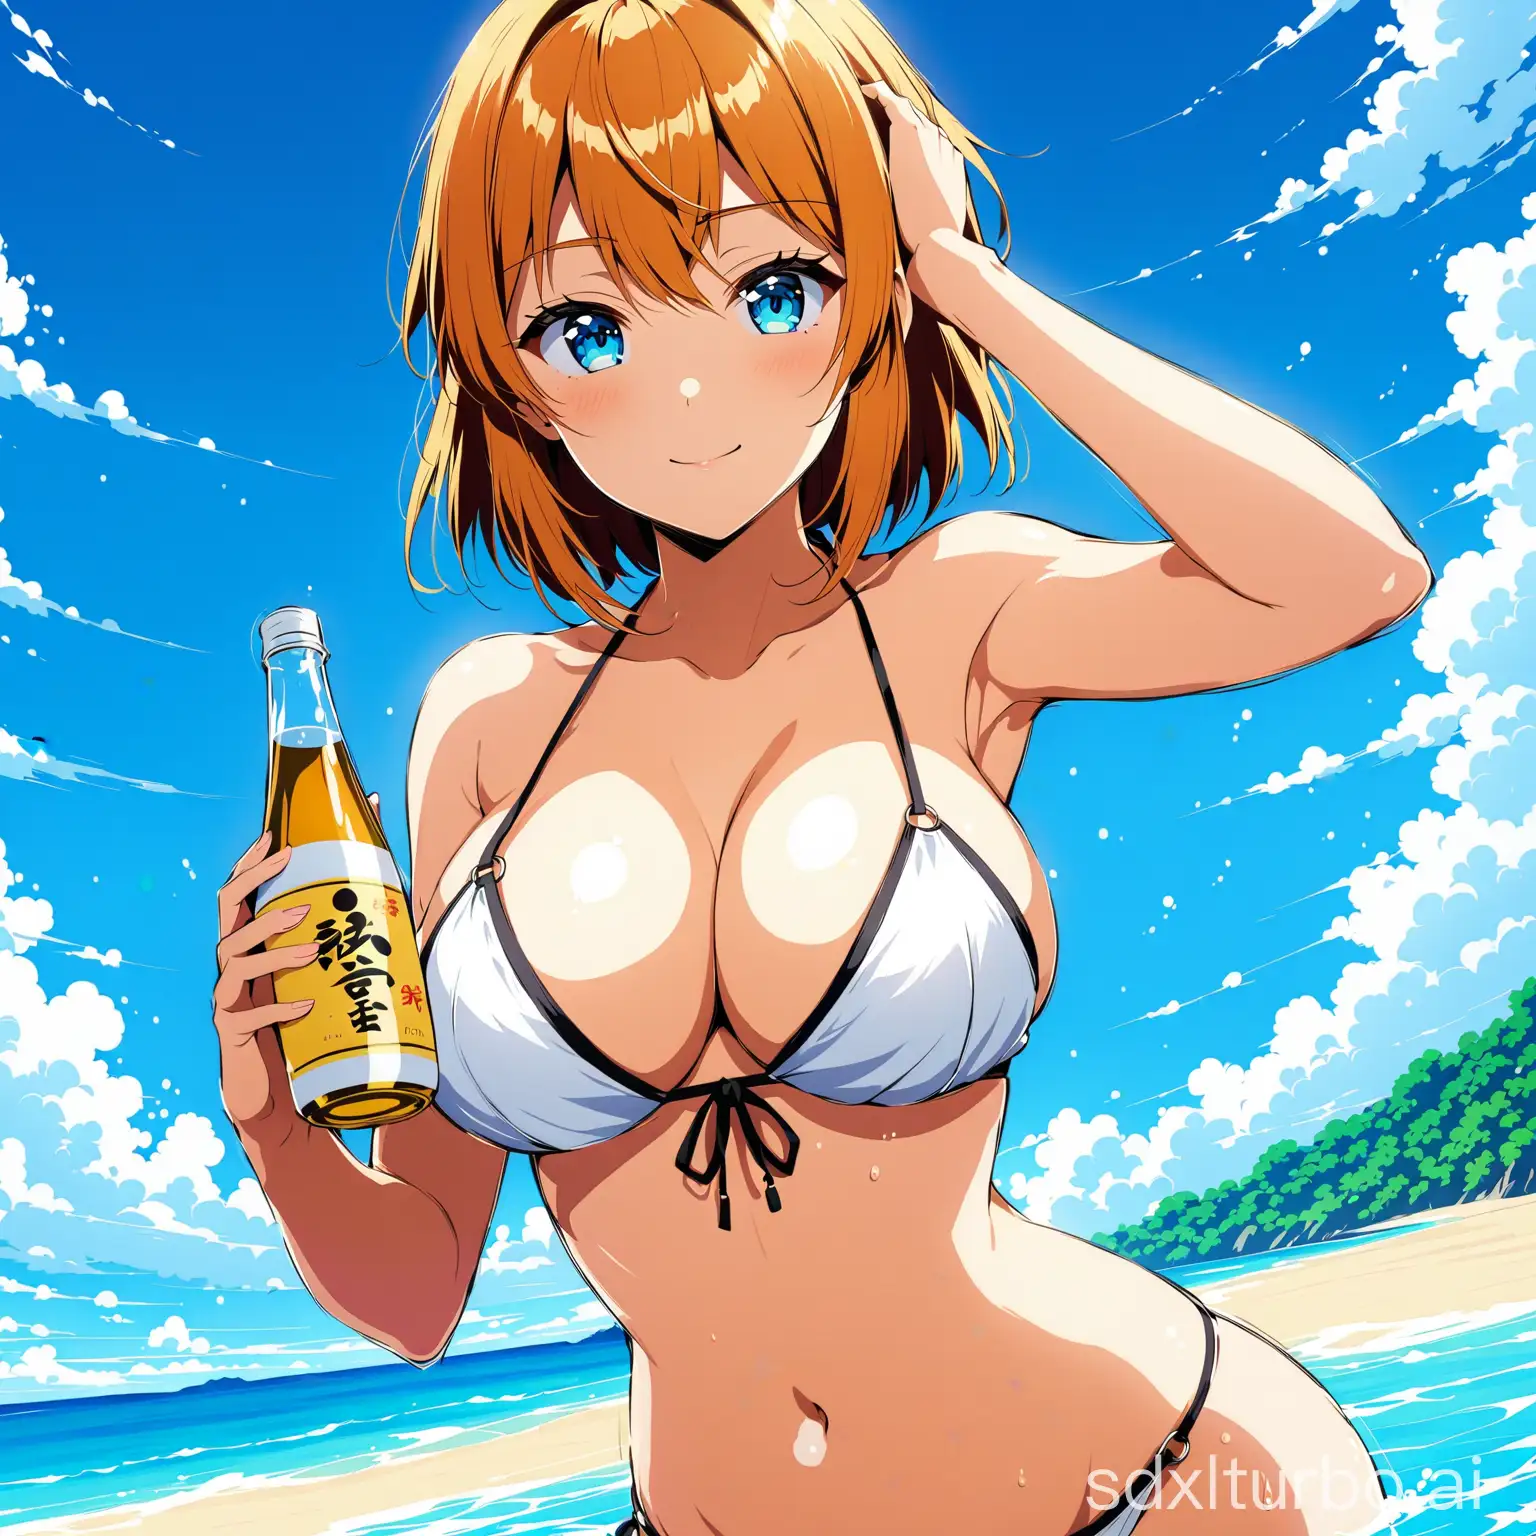 Seductive-Anime-Girl-in-Bikini-with-Sake-Bottle